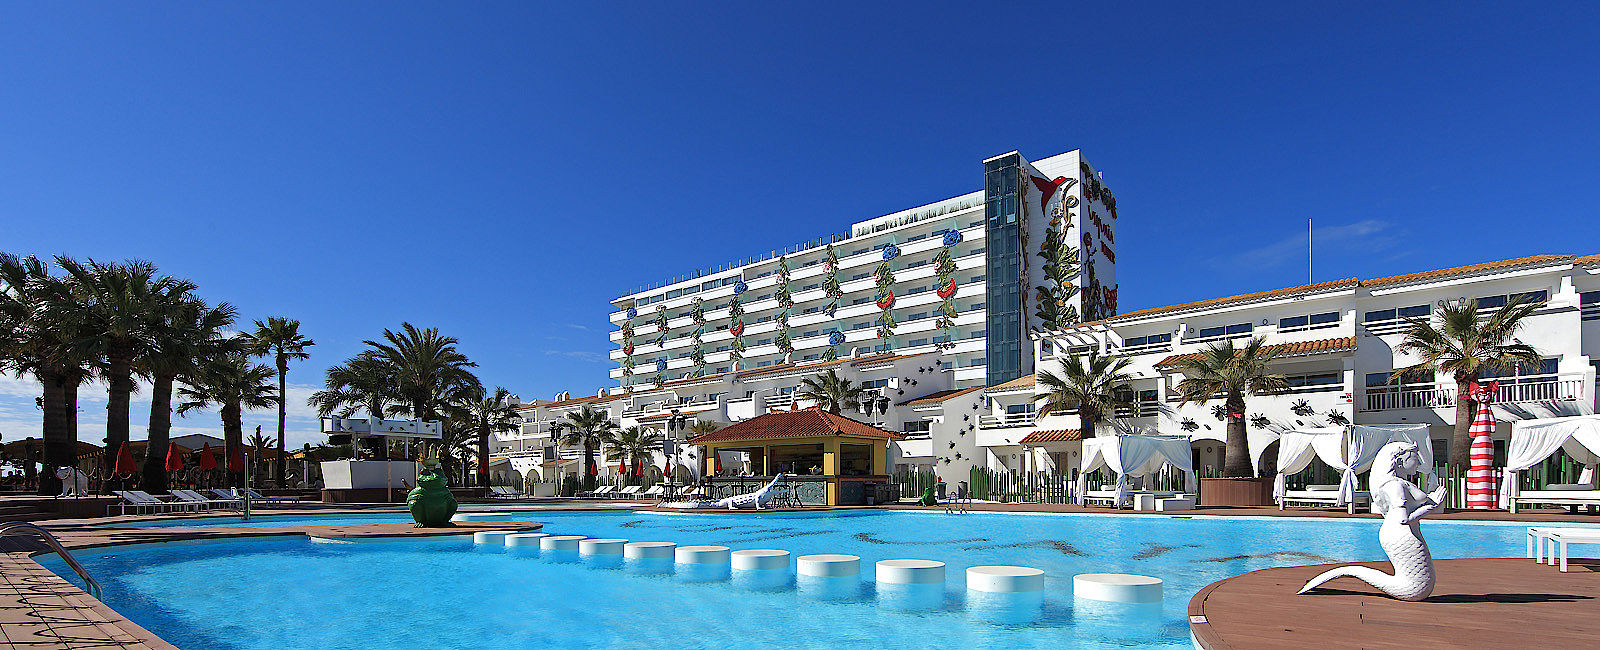 HOTELTEST
 Ushuaïa Ibiza Beach Hotel 
 Ravers´s Paradise 